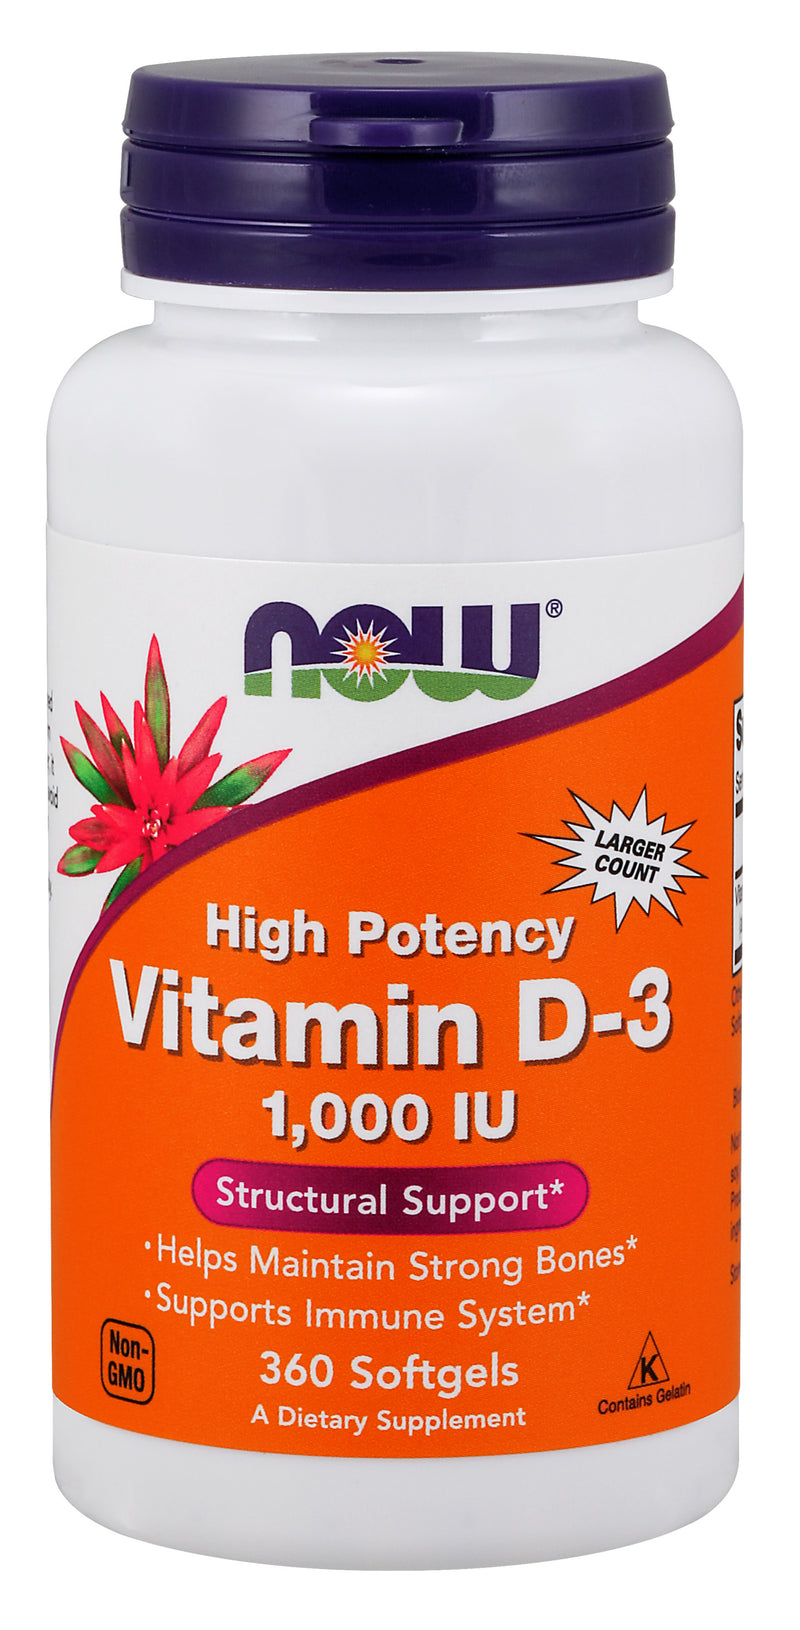 Vitamin D-3 1,000 IU 360 Softgels